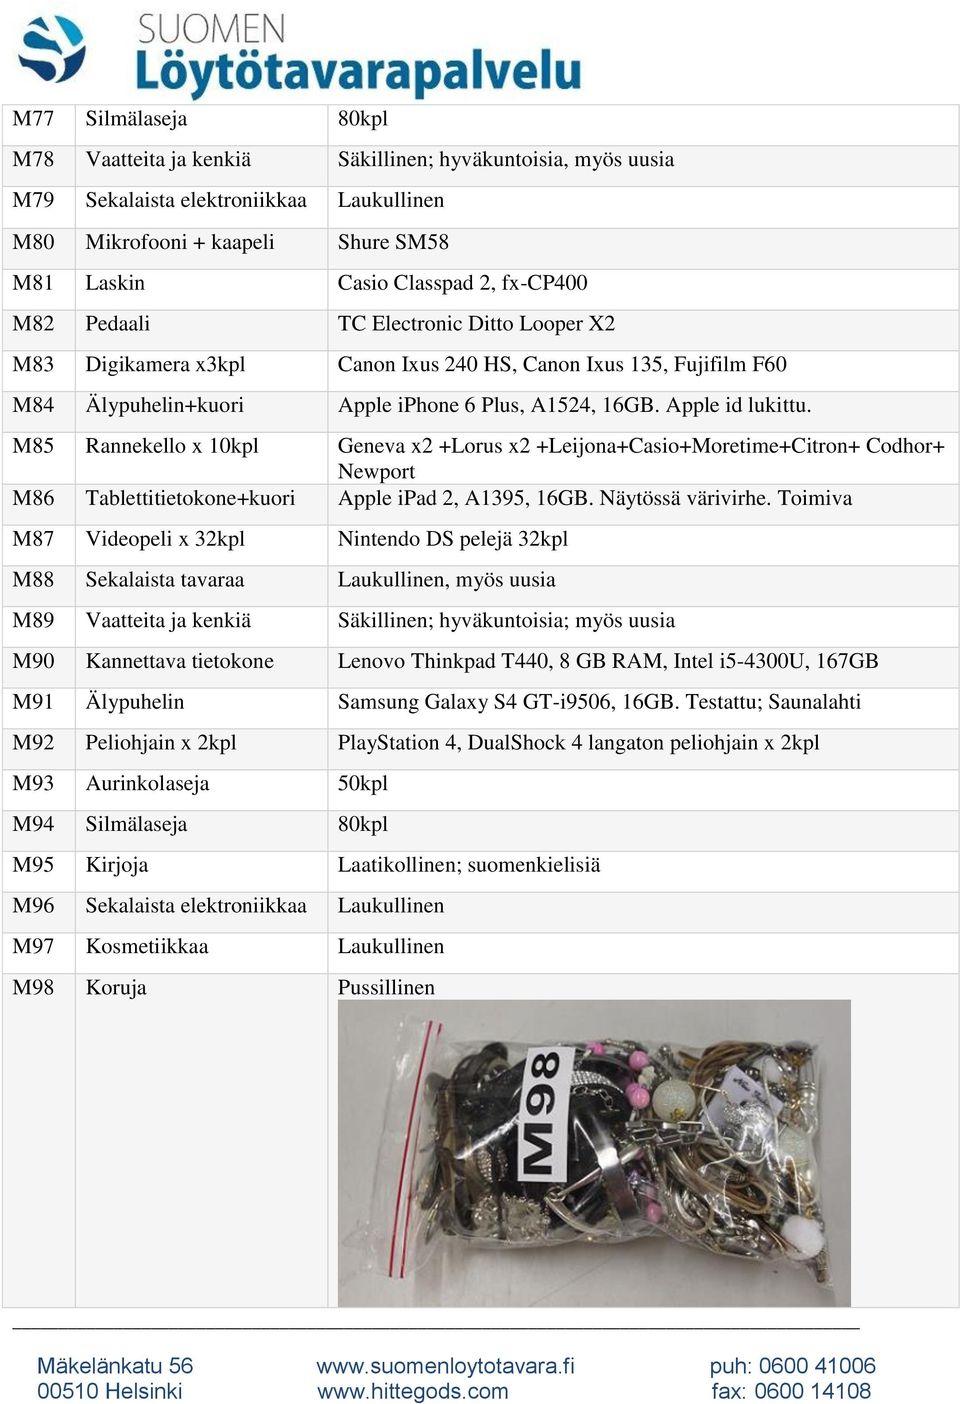 M85 Rannekello x 10kpl Geneva x2 +Lorus x2 +Leijona+Casio+Moretime+Citron+ Codhor+ Newport M86 Tablettitietokone+kuori Apple ipad 2, A1395, 16GB. Näytössä värivirhe.